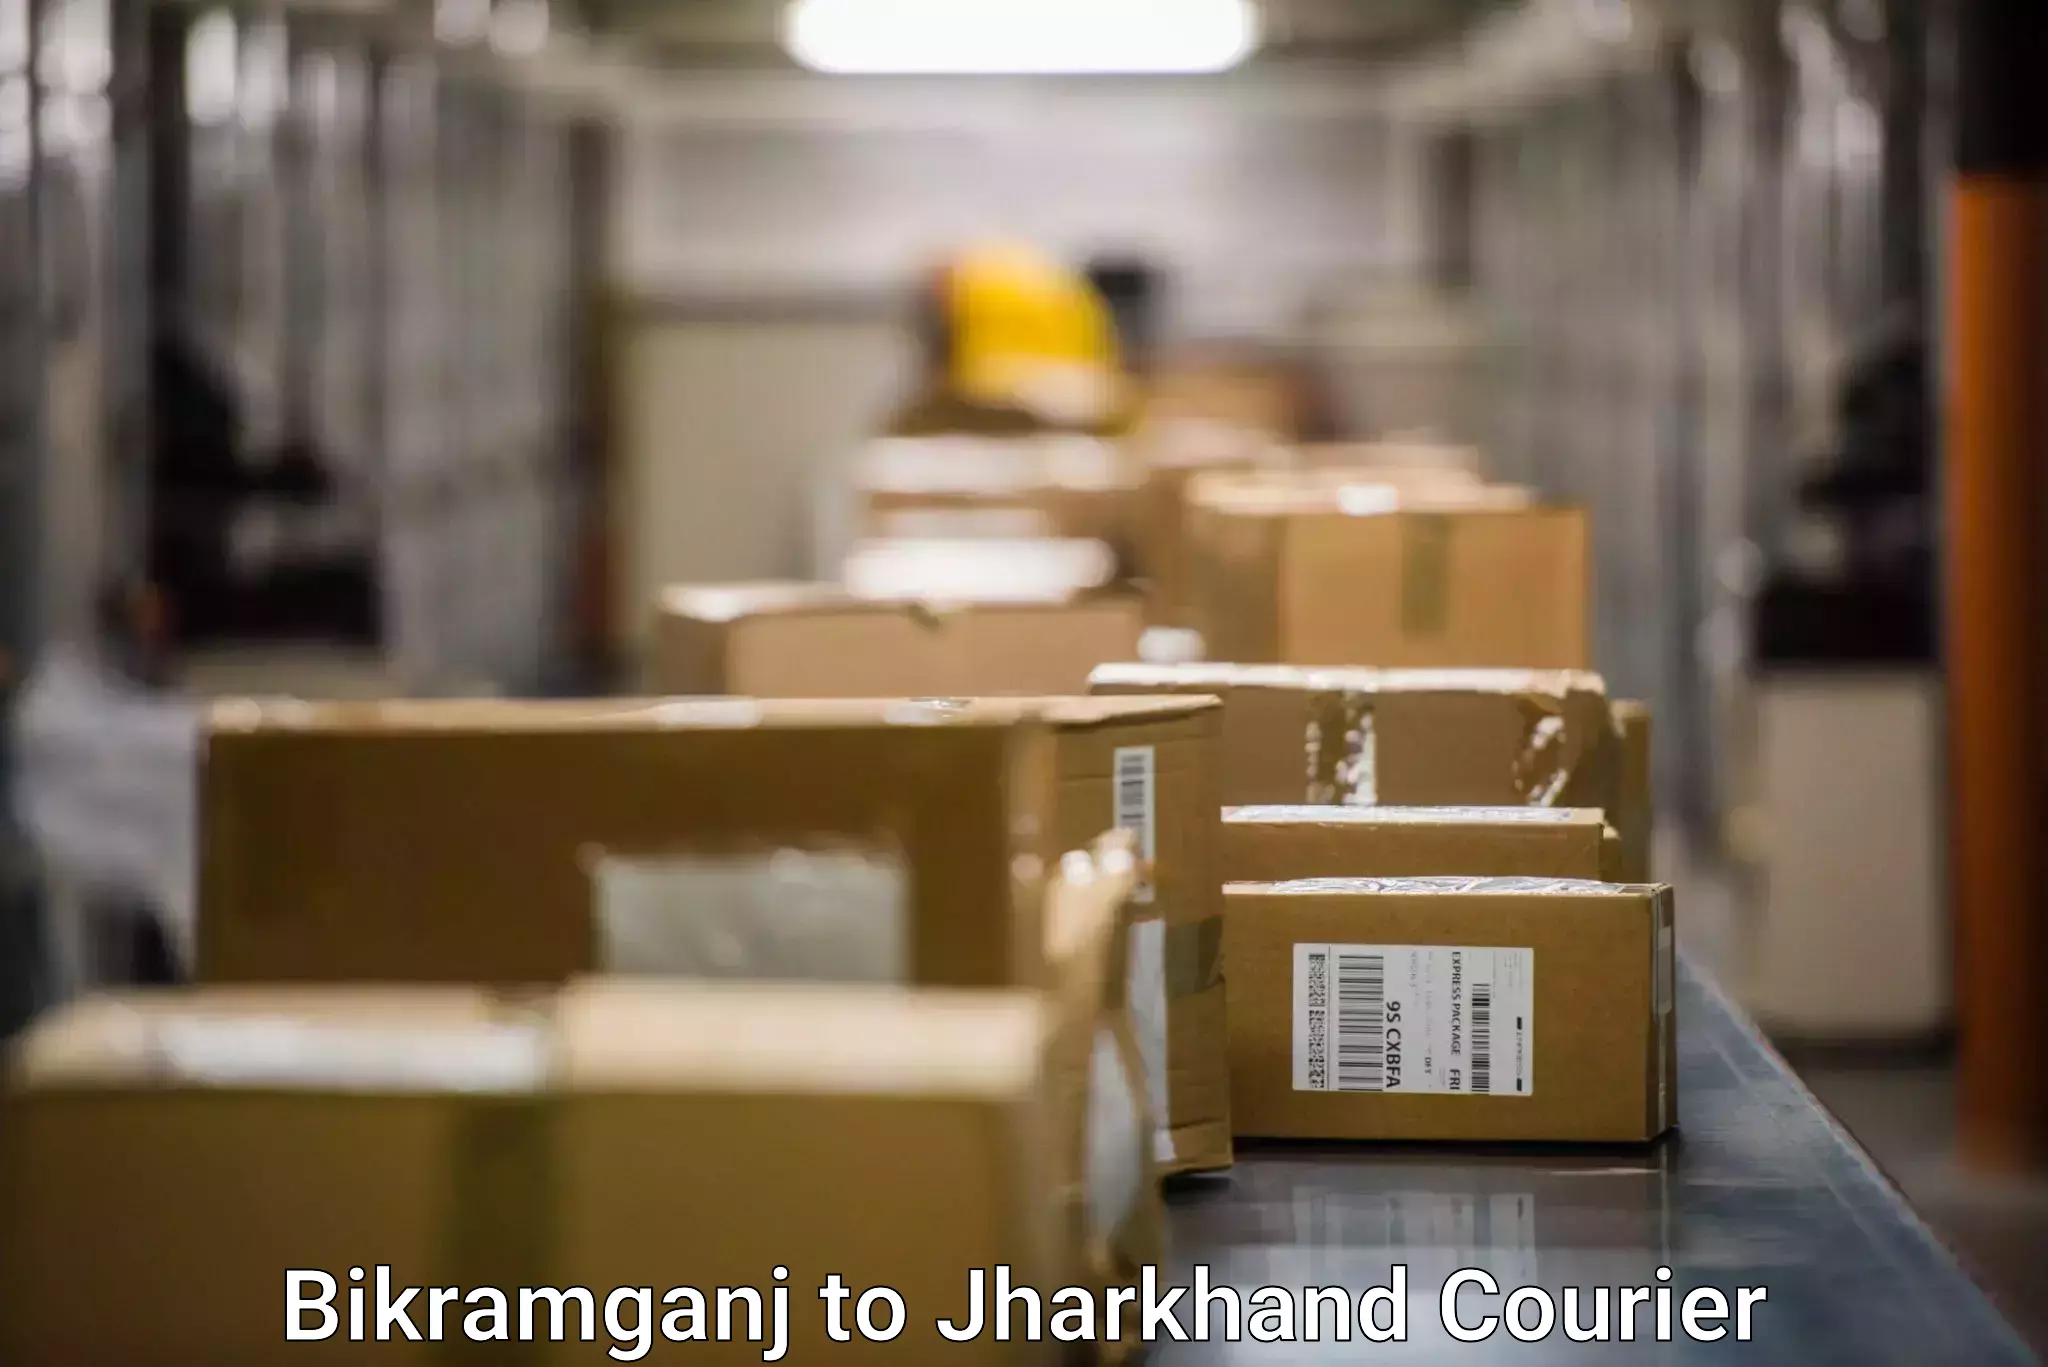 Professional courier handling Bikramganj to Kedla